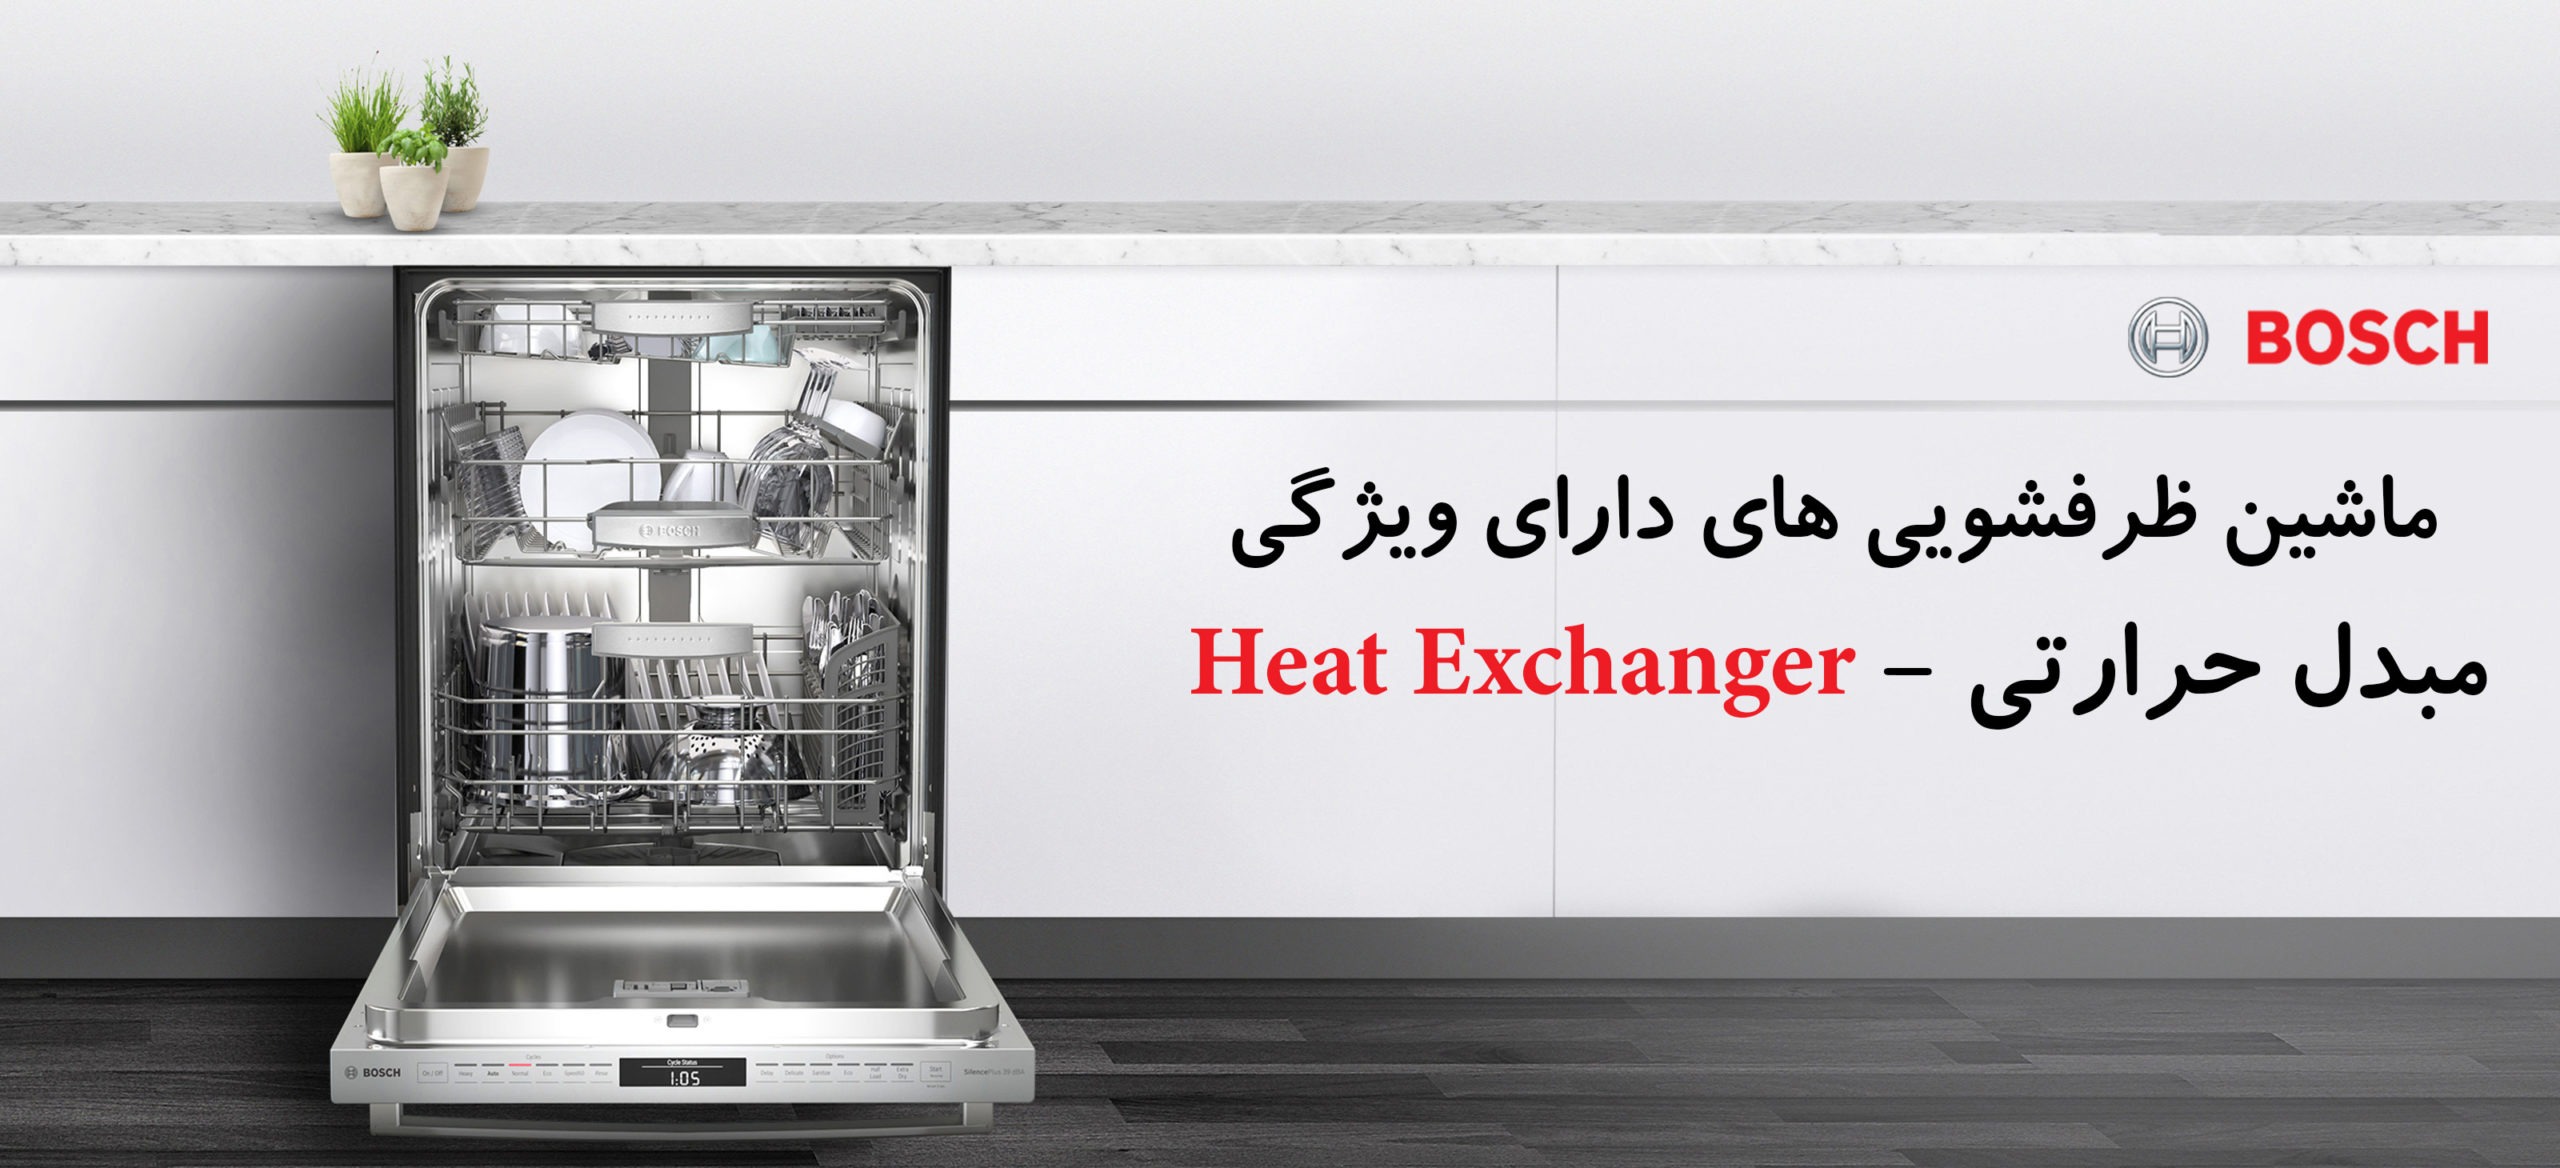 ویژگی مبدل حرارتی در ماشین ظرفشویی – Heat Exchanger